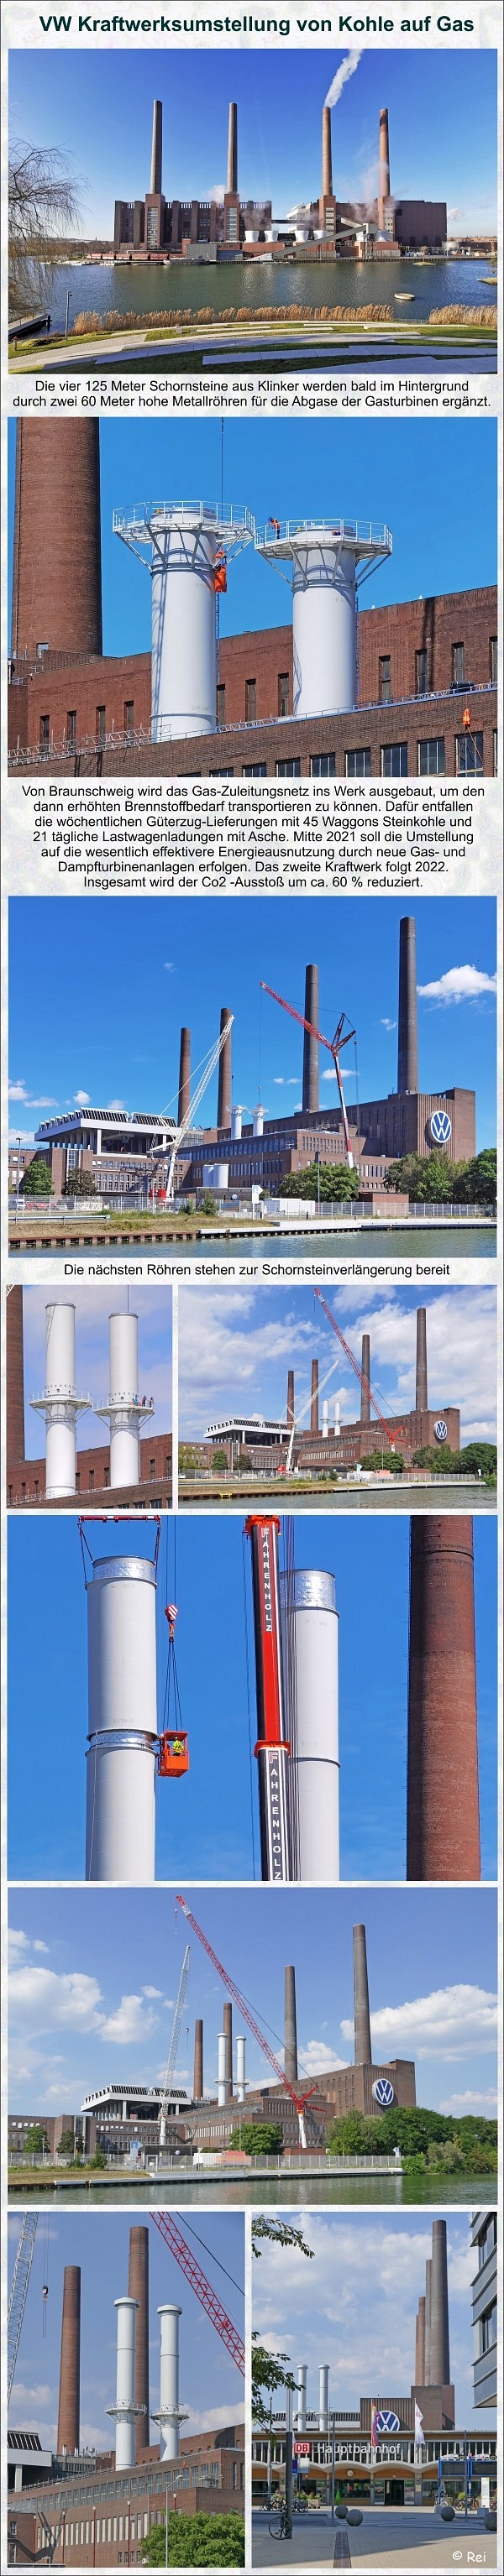 VW-Kraftwerk - Umstellung von Kohle auf Gas